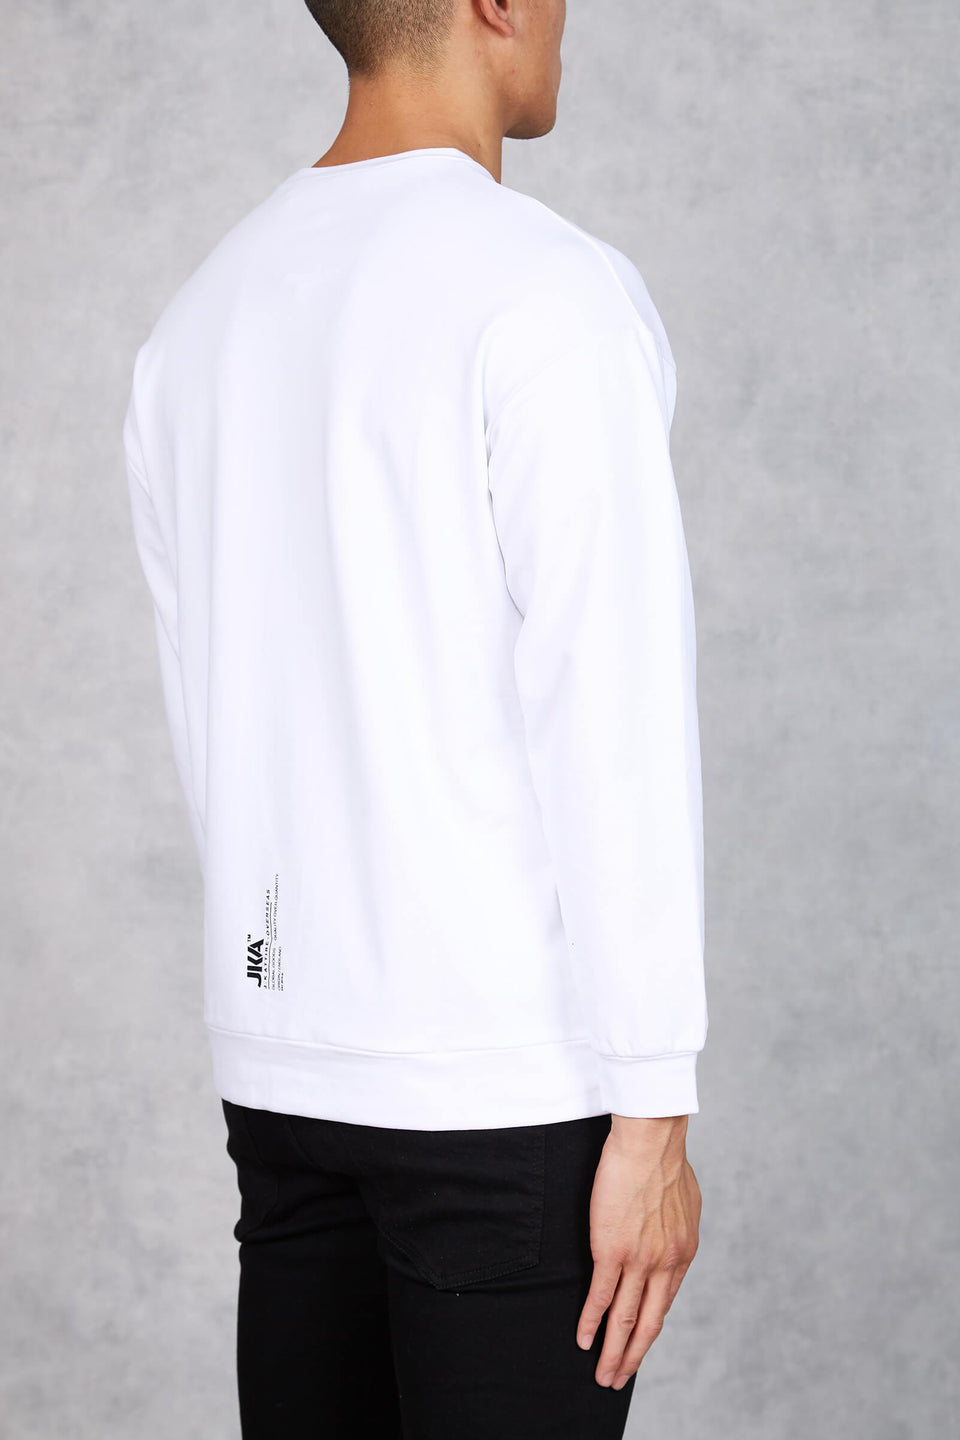 JKA British Lightweight Sweatshirt - White